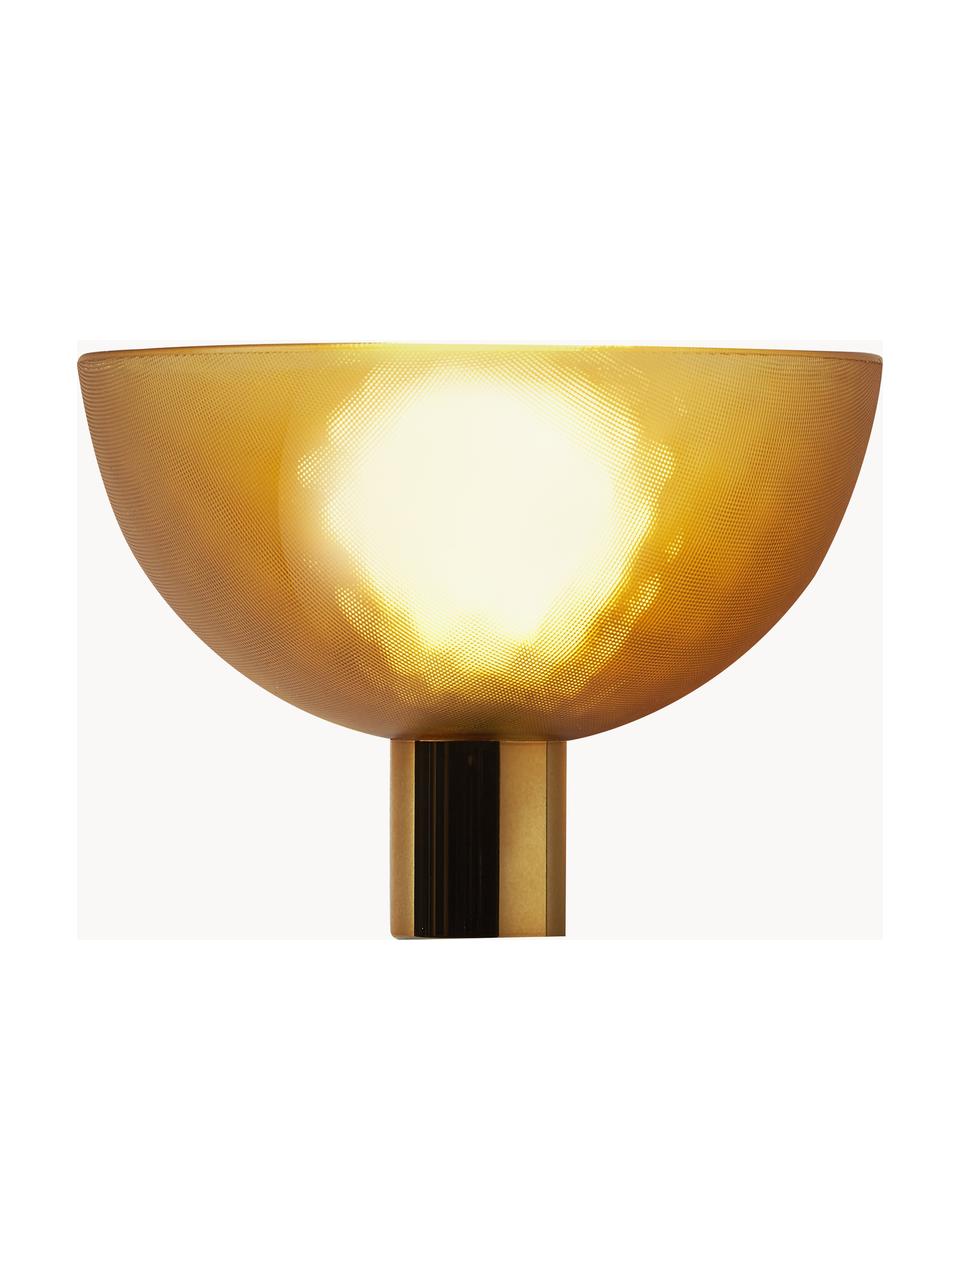 Dimbare LED wandlamp Fata, Lampenkap: thermoplastisch materiaal, Lampvoet: gerecycled ABS met metall, Goudkleurig, B 16 x H 17 cm